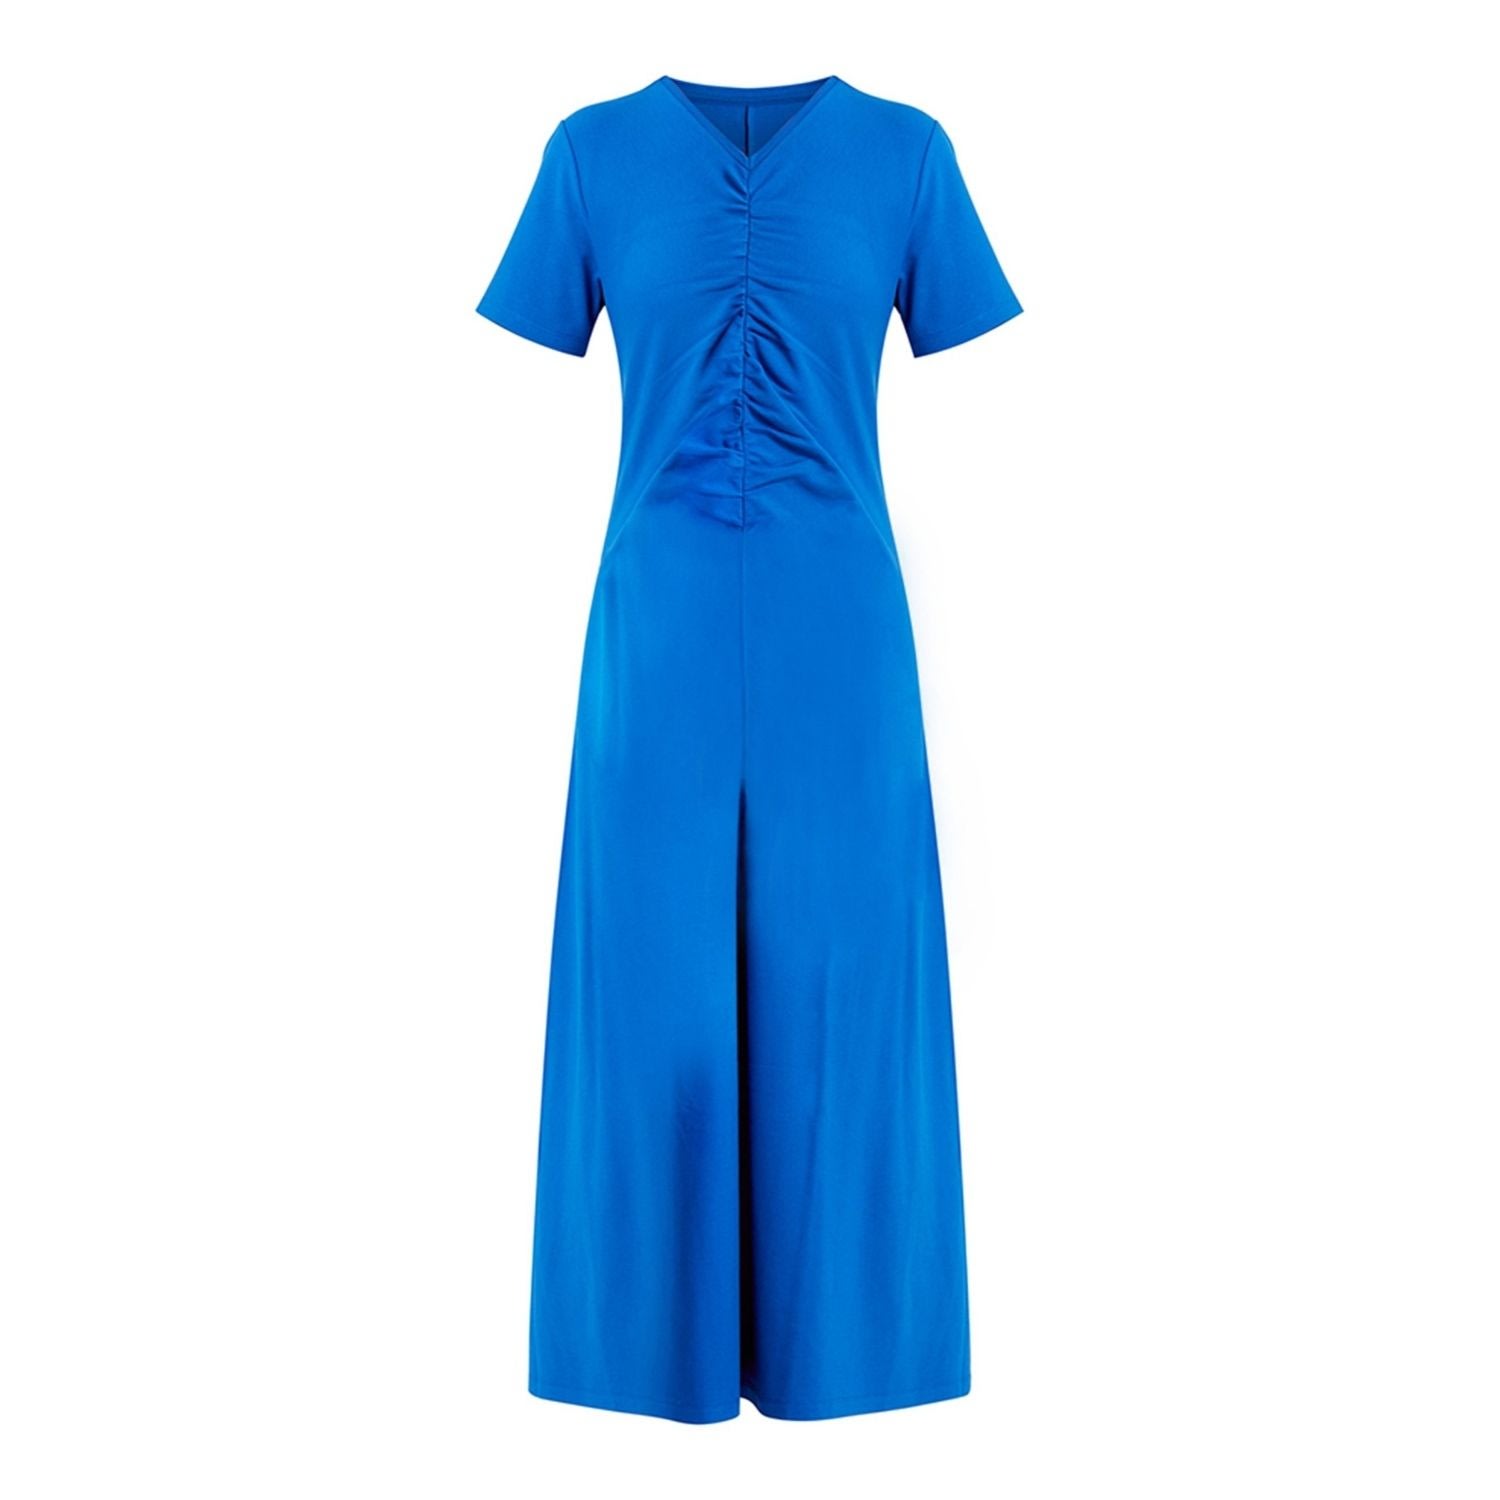 Women’s Finnley Dress Blue Small Helen Mcalinden